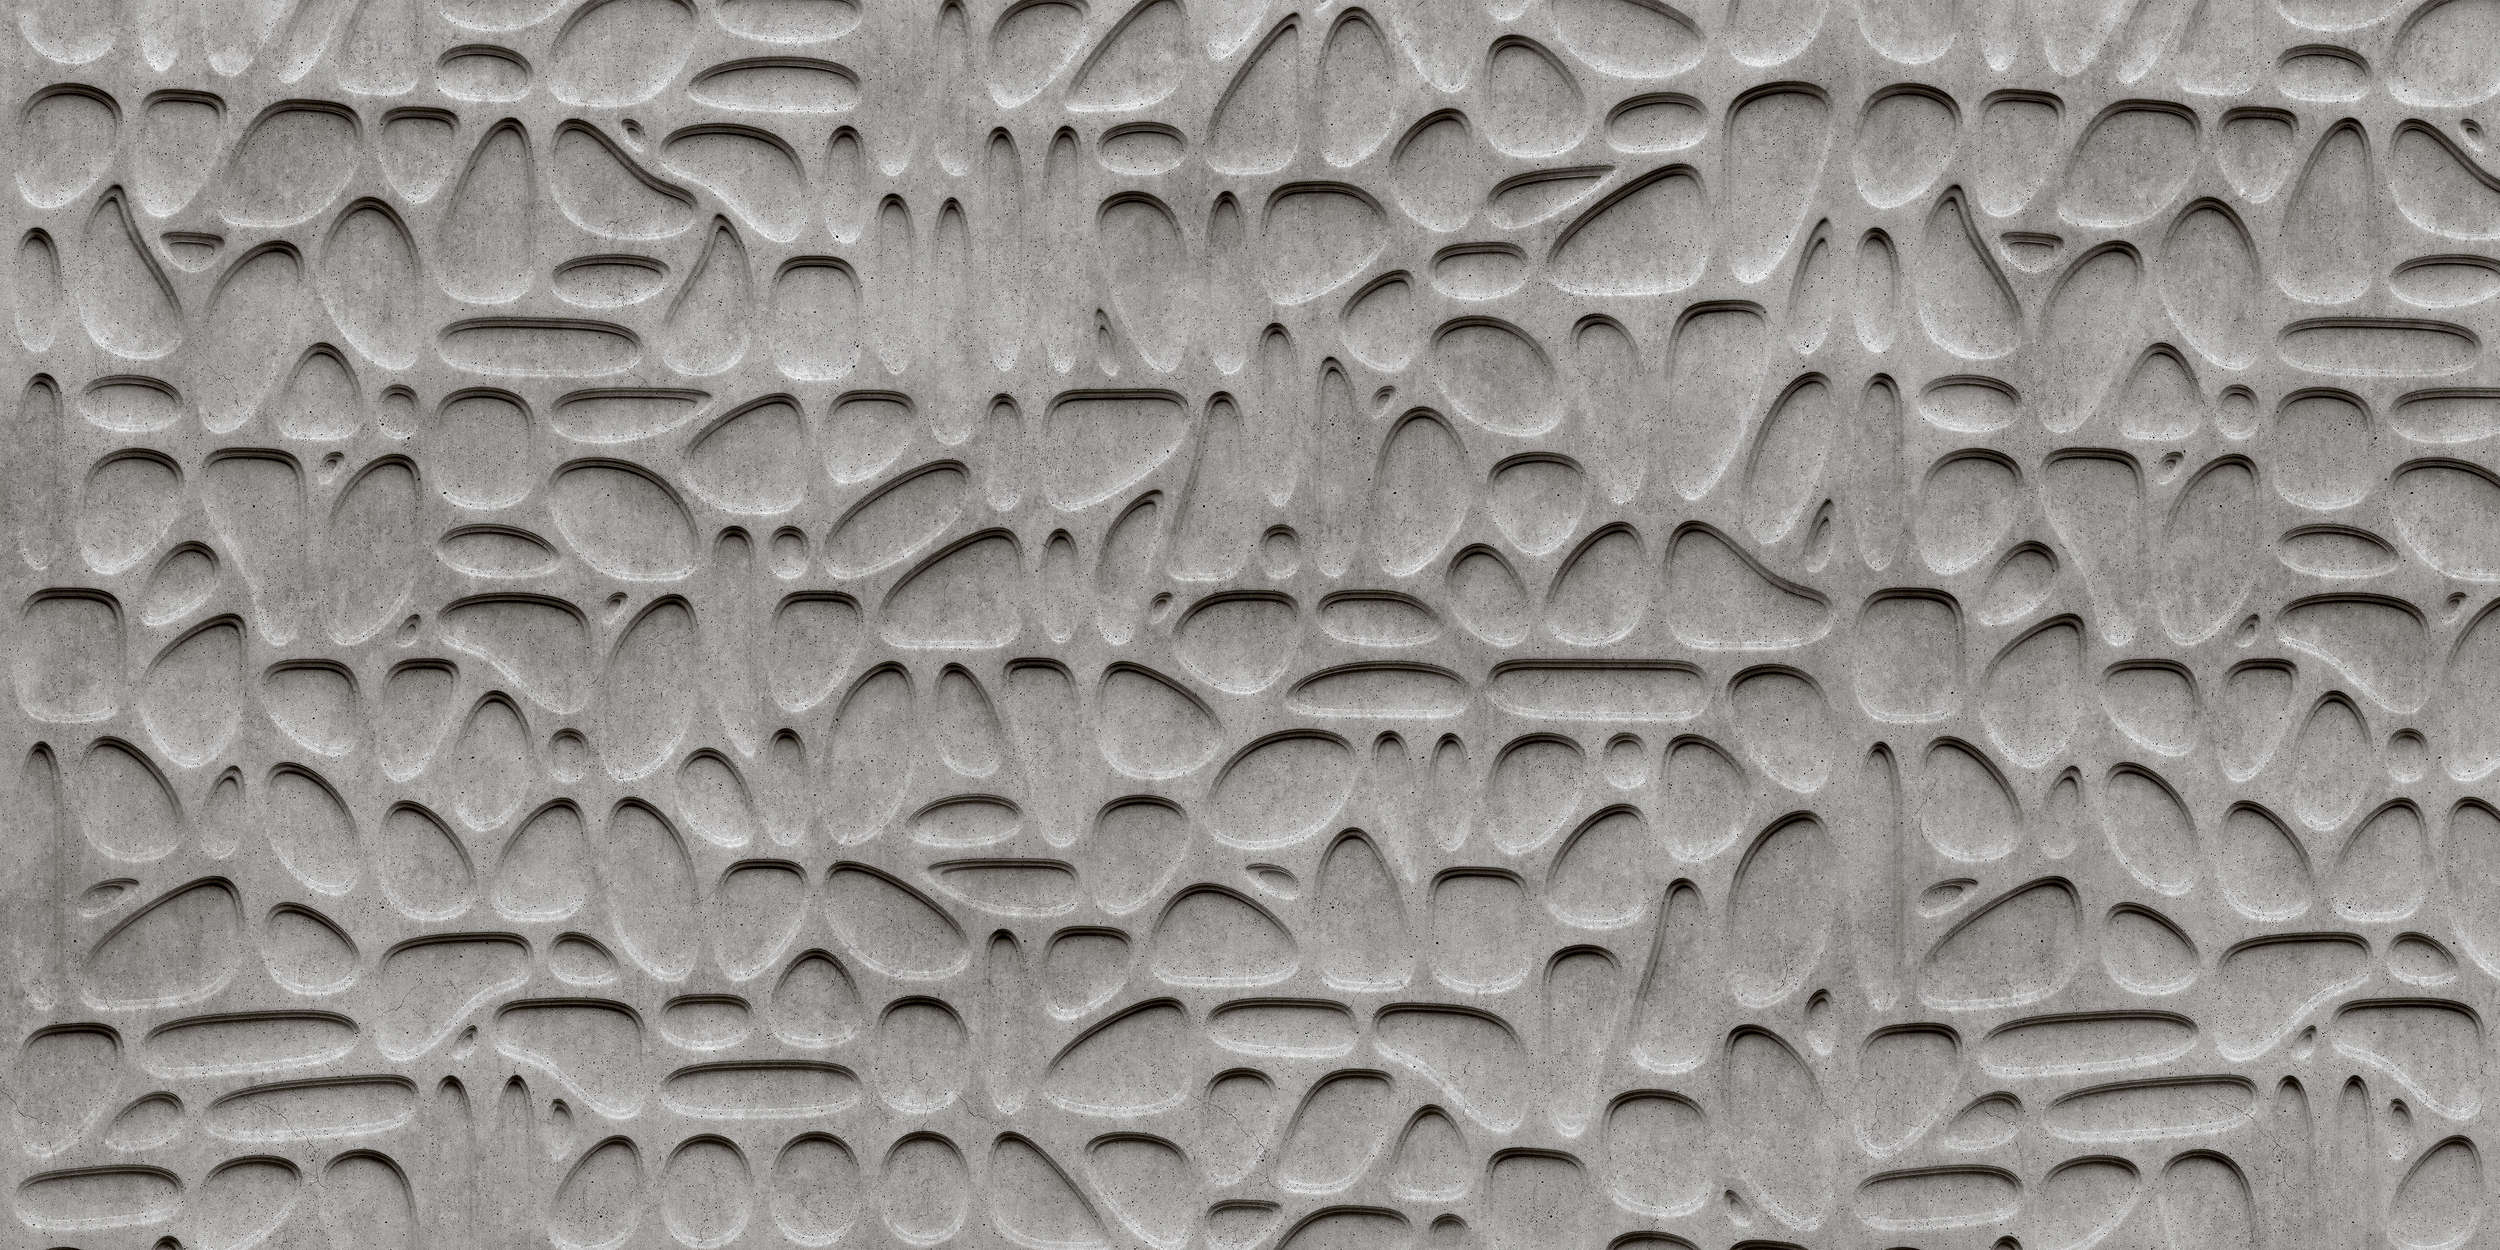             Maze 1 - Carta da parati a bolle di cemento 3D - Grigio, nero | Pile liscio premium
        